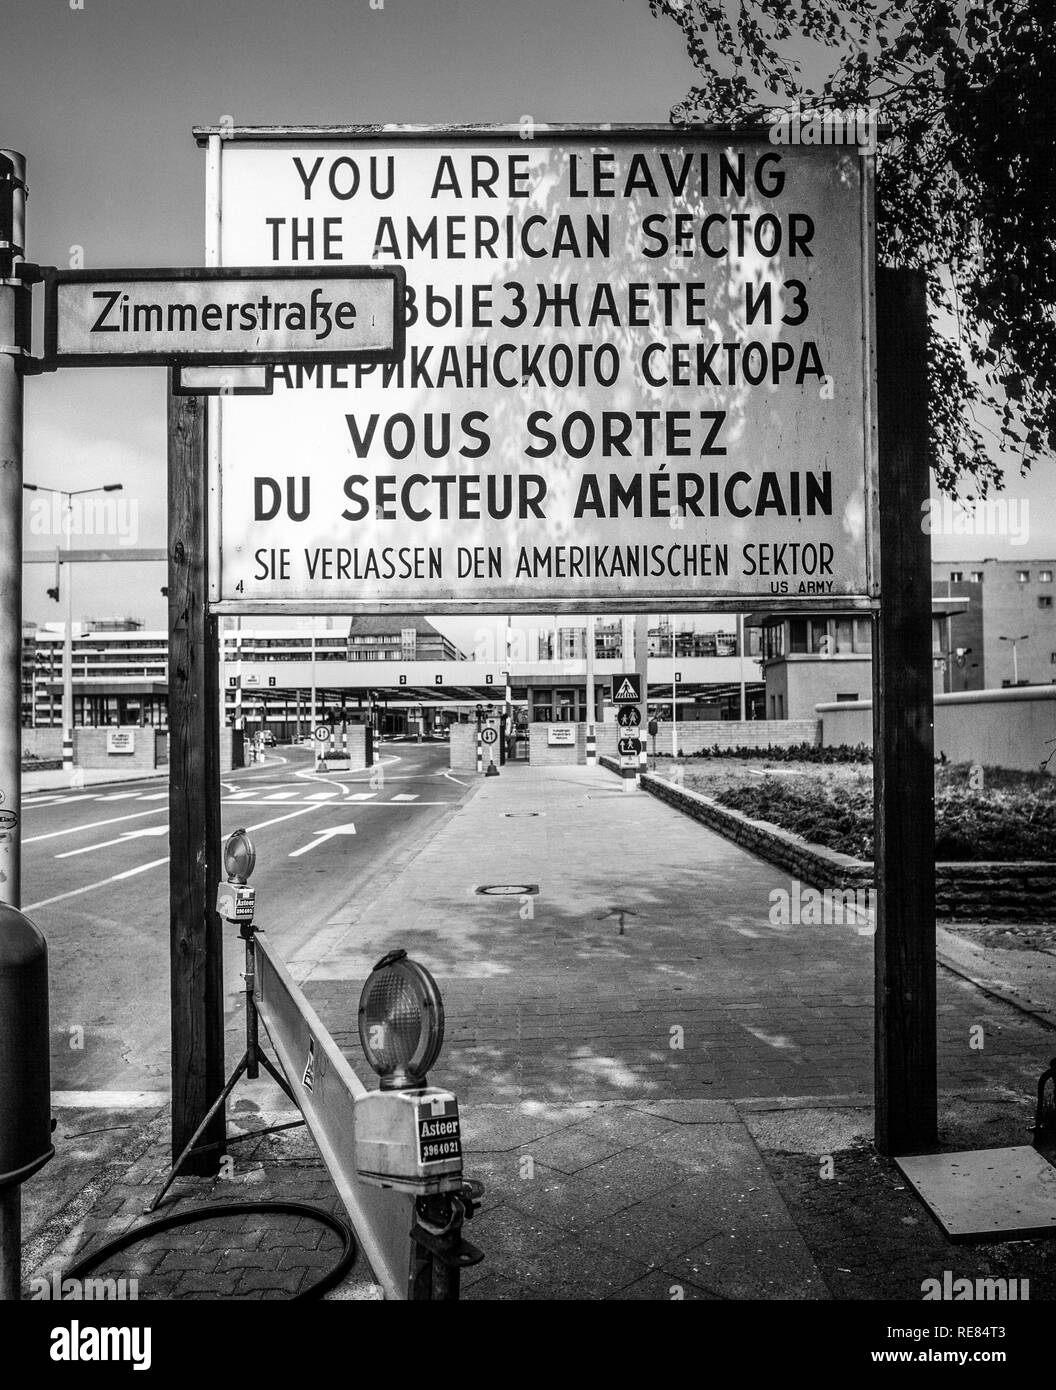 Août 1986, laissant le secteur américain de Berlin, Berlin est signe d'avertissement postesfrontières, Zimmerstrasse street, Kreuzberg, Berlin Ouest, l'Allemagne, l'Europe, Banque D'Images